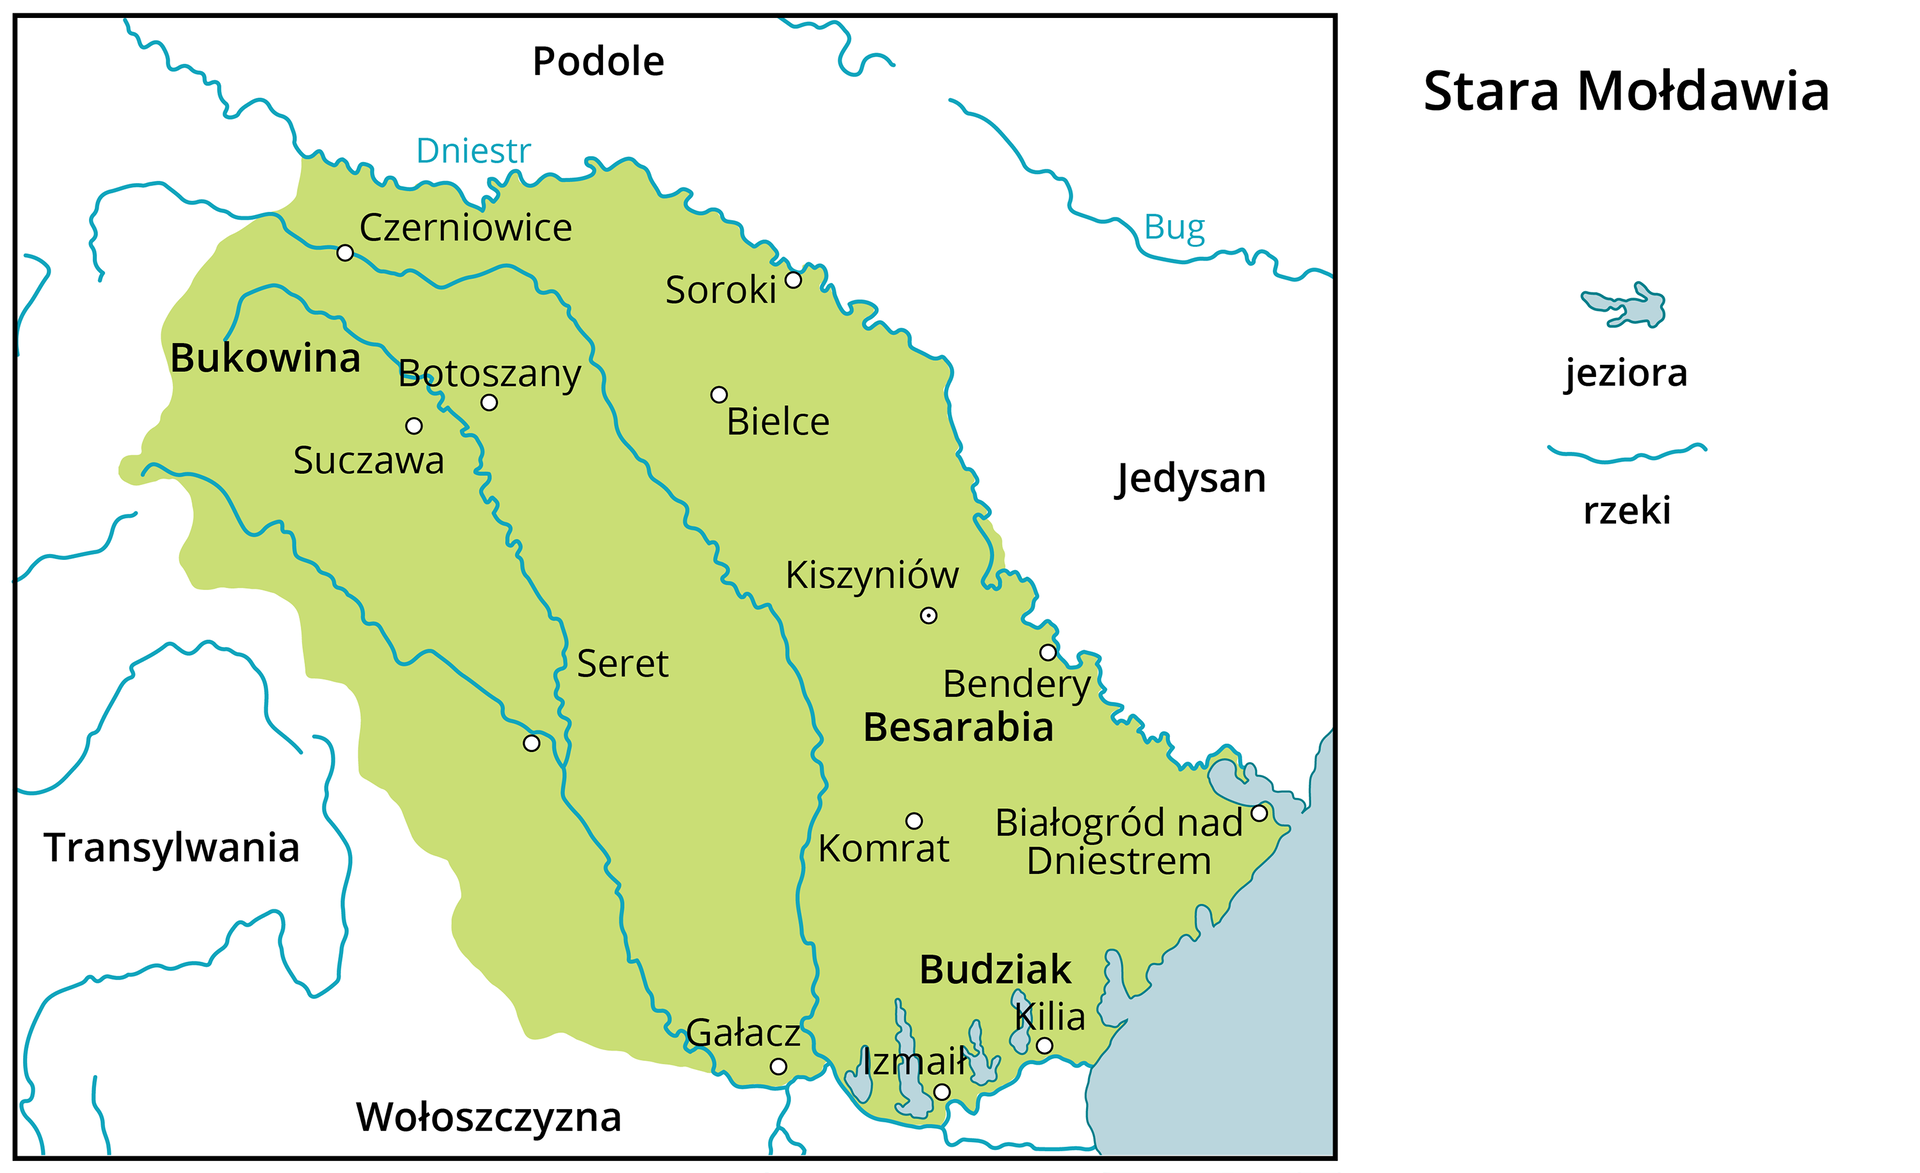 Mapa przedstawia Starą Mołdawię. Państwa sąsiadujące: Wołoszczyzna, Transylwania, Podole, Jedysan. Większe miasta na terenie Starej Mołdawii: Bukowina, Besarabia, Budziak. 